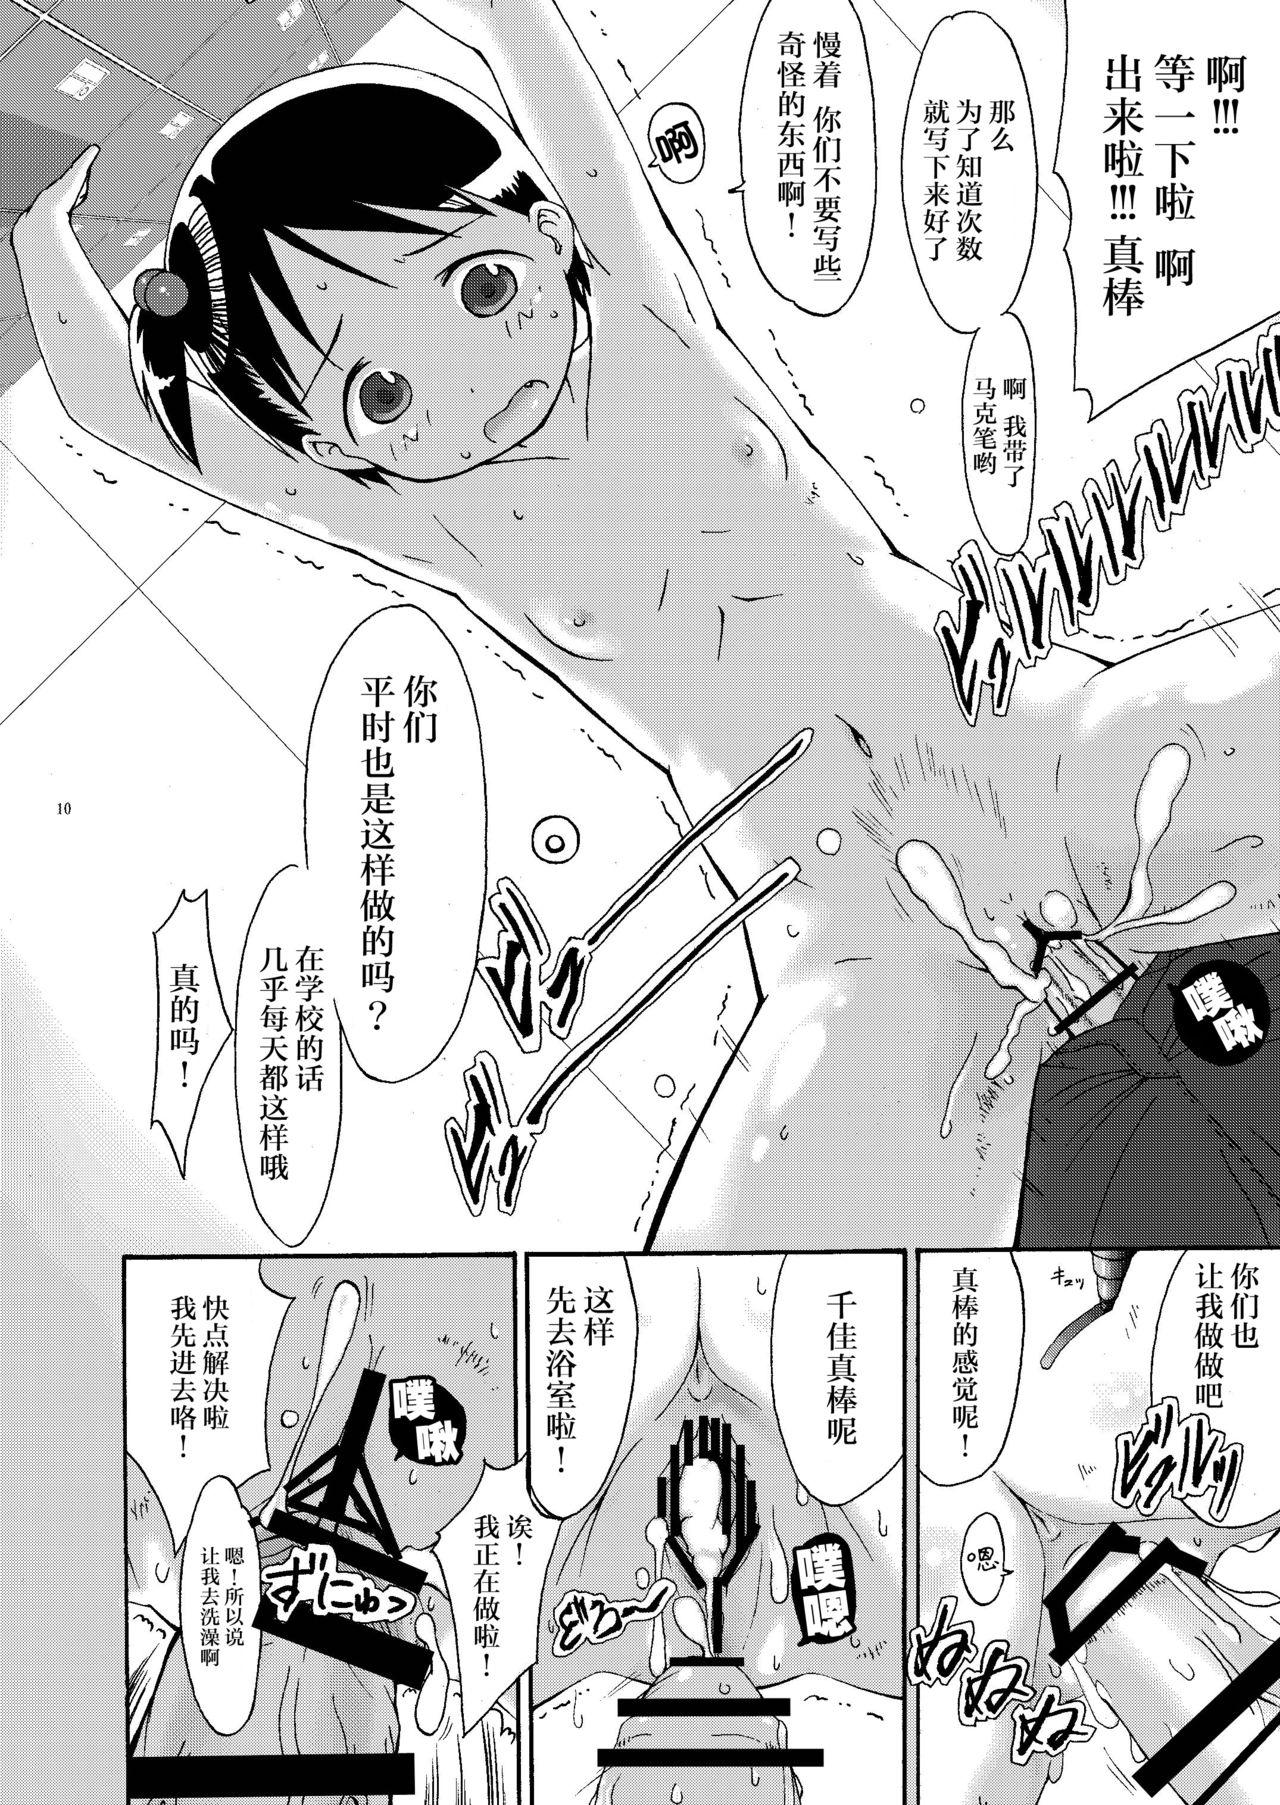 With mashimaro ism extra - Ichigo mashimaro Semen - Page 11